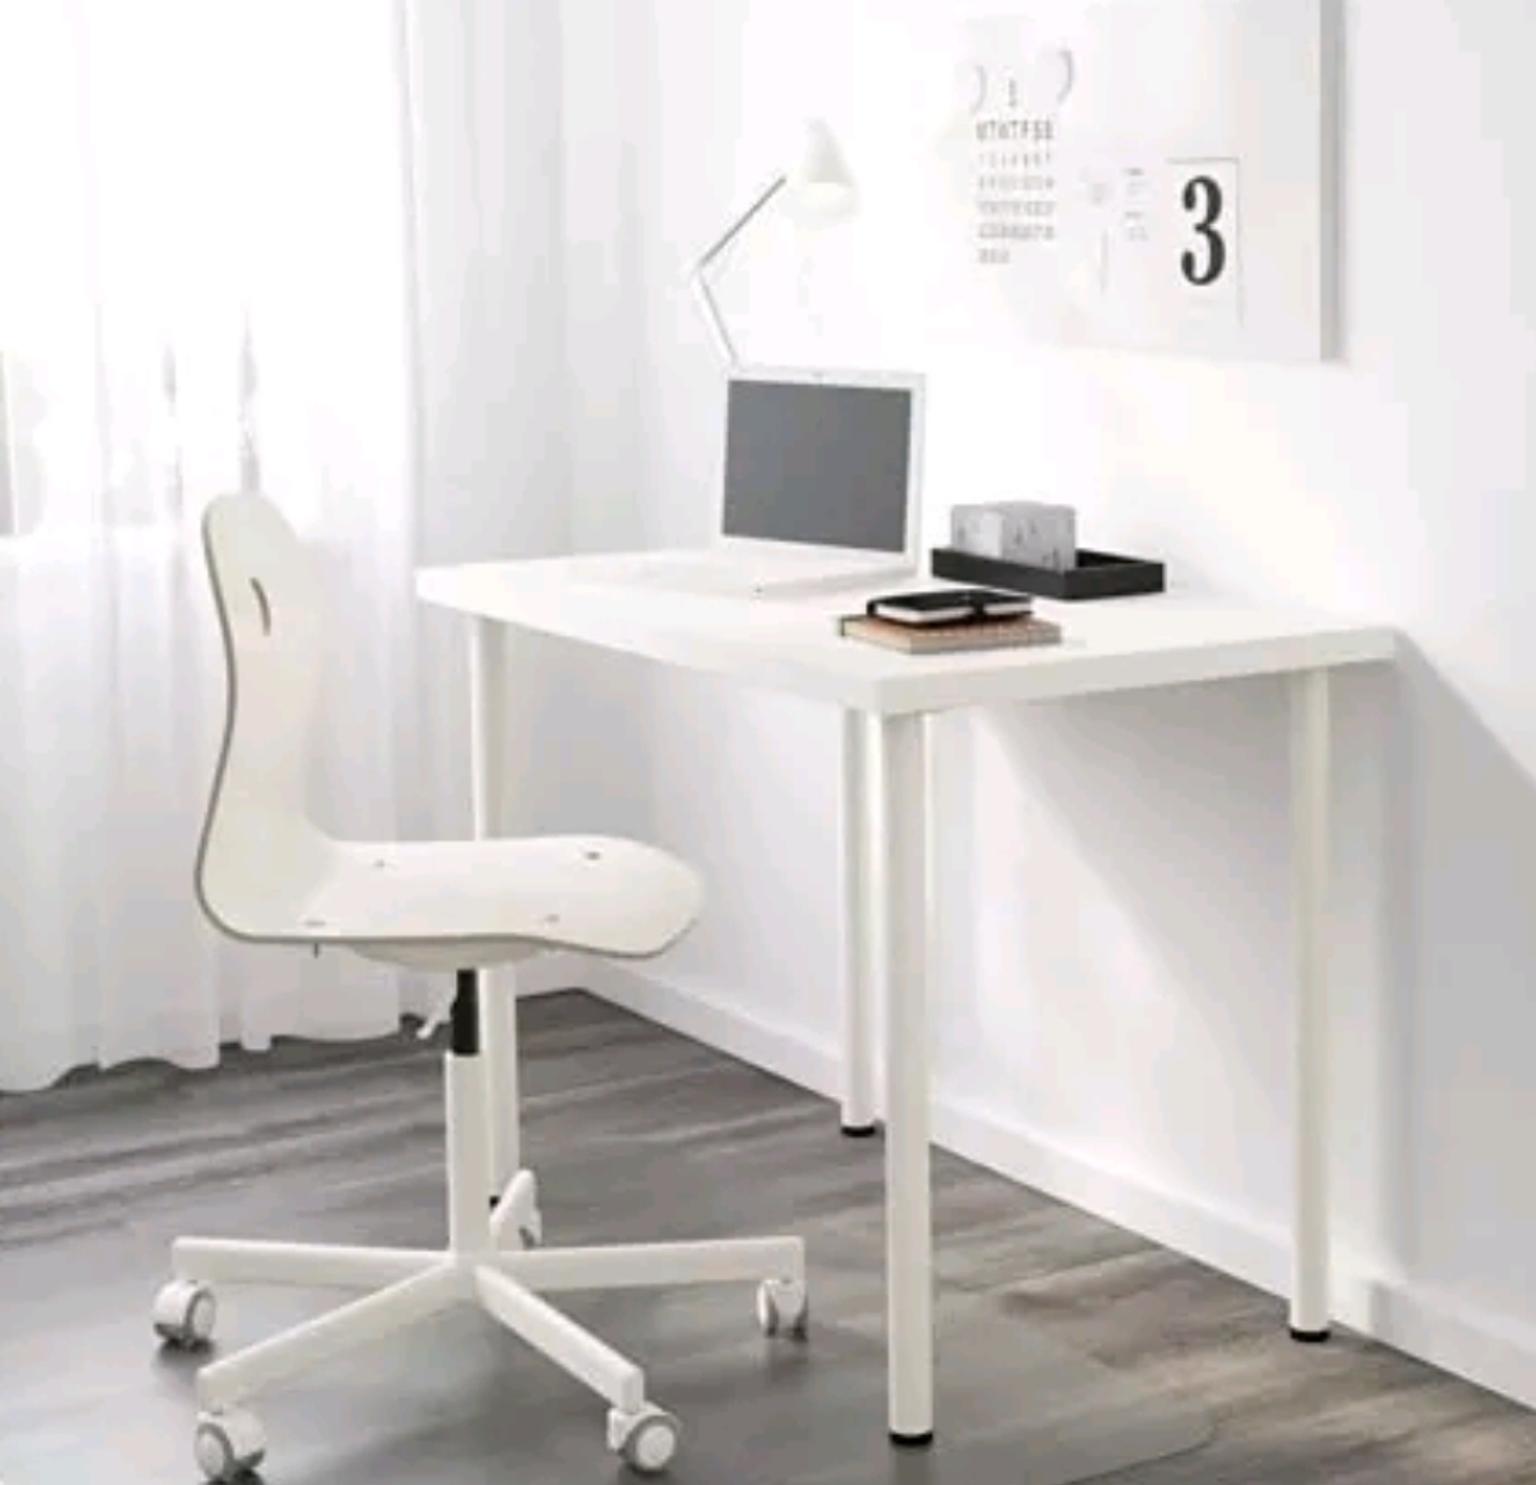 2 Ikea Linnmon Dingning Tables Study Desks In N14 Enfield Fur